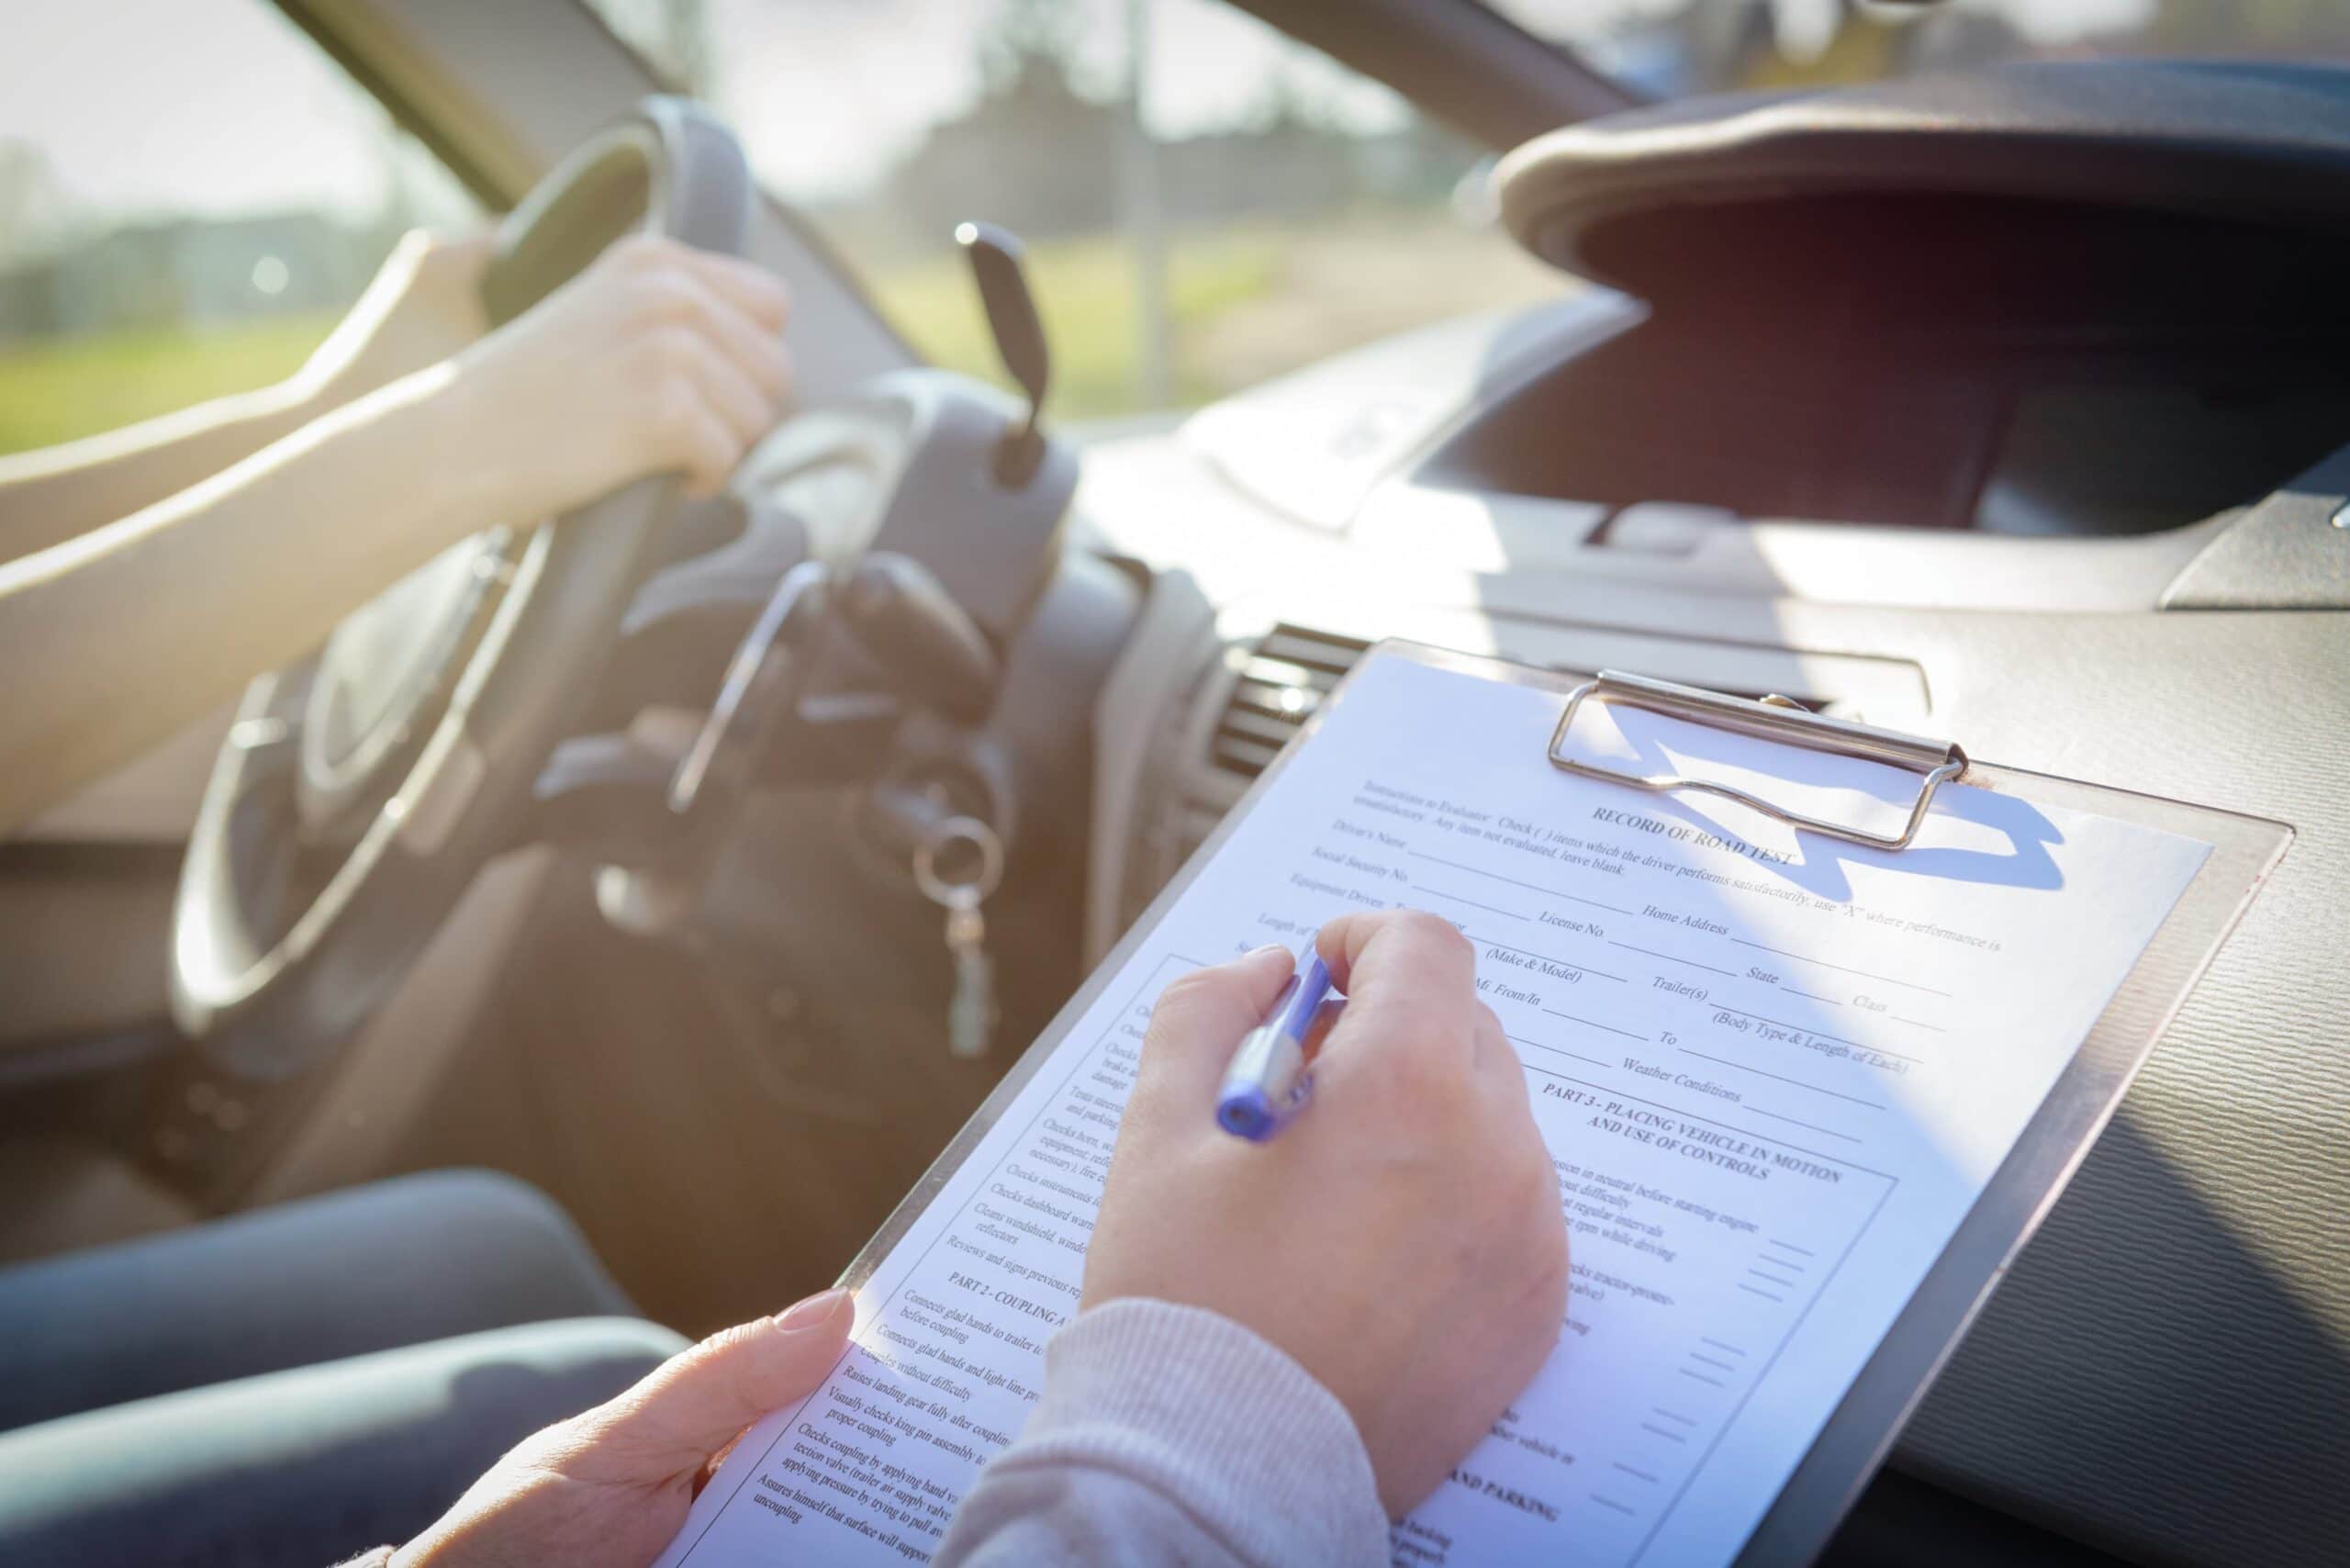 Faltas eliminatorias en el examen de conducir, ¿cuáles son y cómo evitarlas?